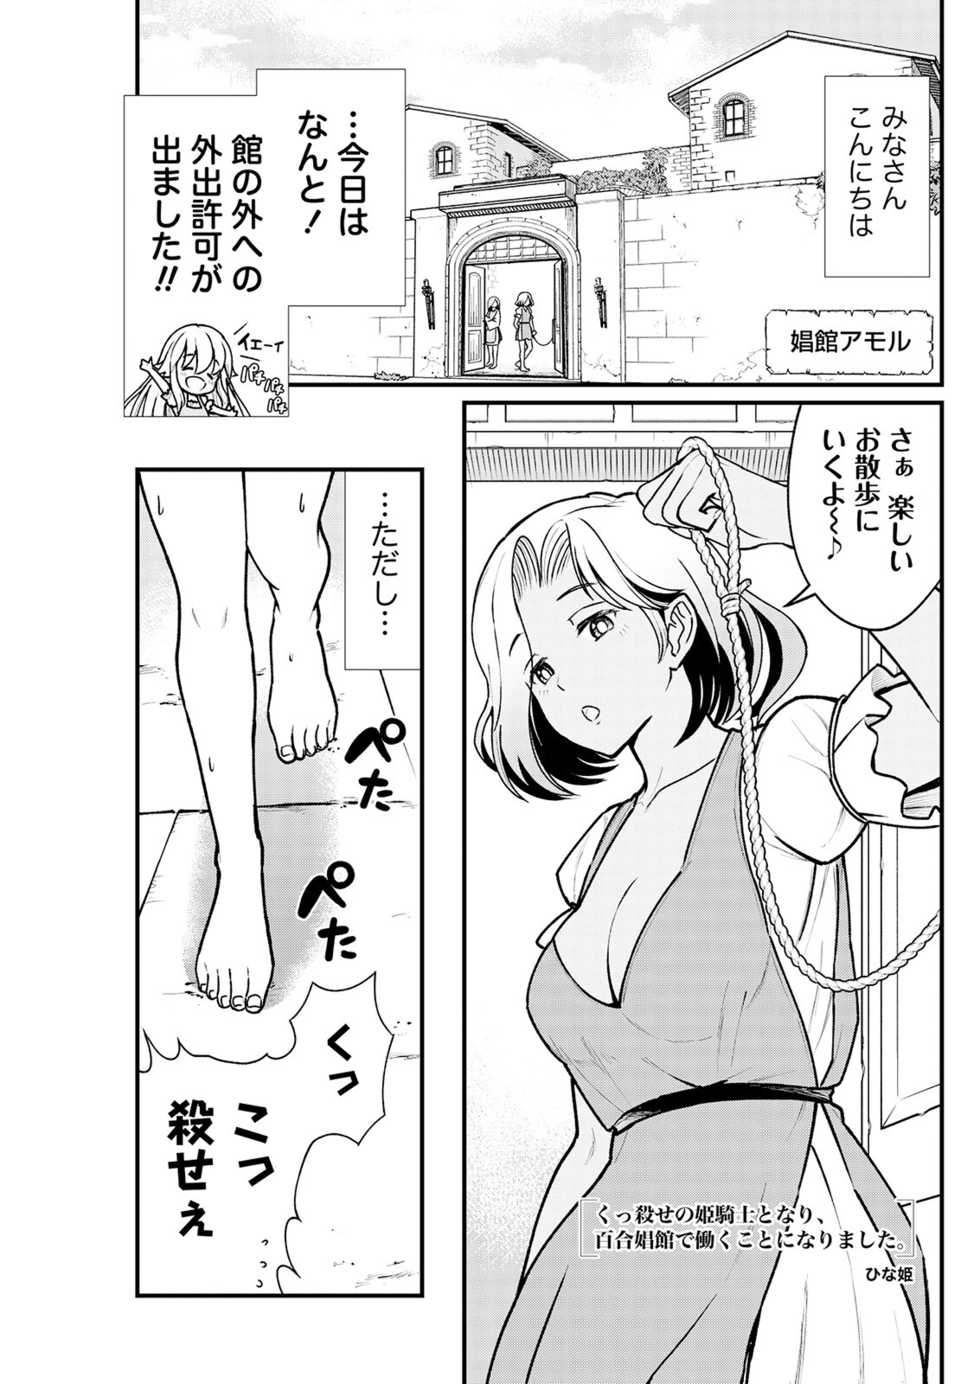 [Hinaki] Kukkorose no Himekishi to nari, Yuri Shoukan de Hataraku koto ni Narimashita. 3 - Page 3